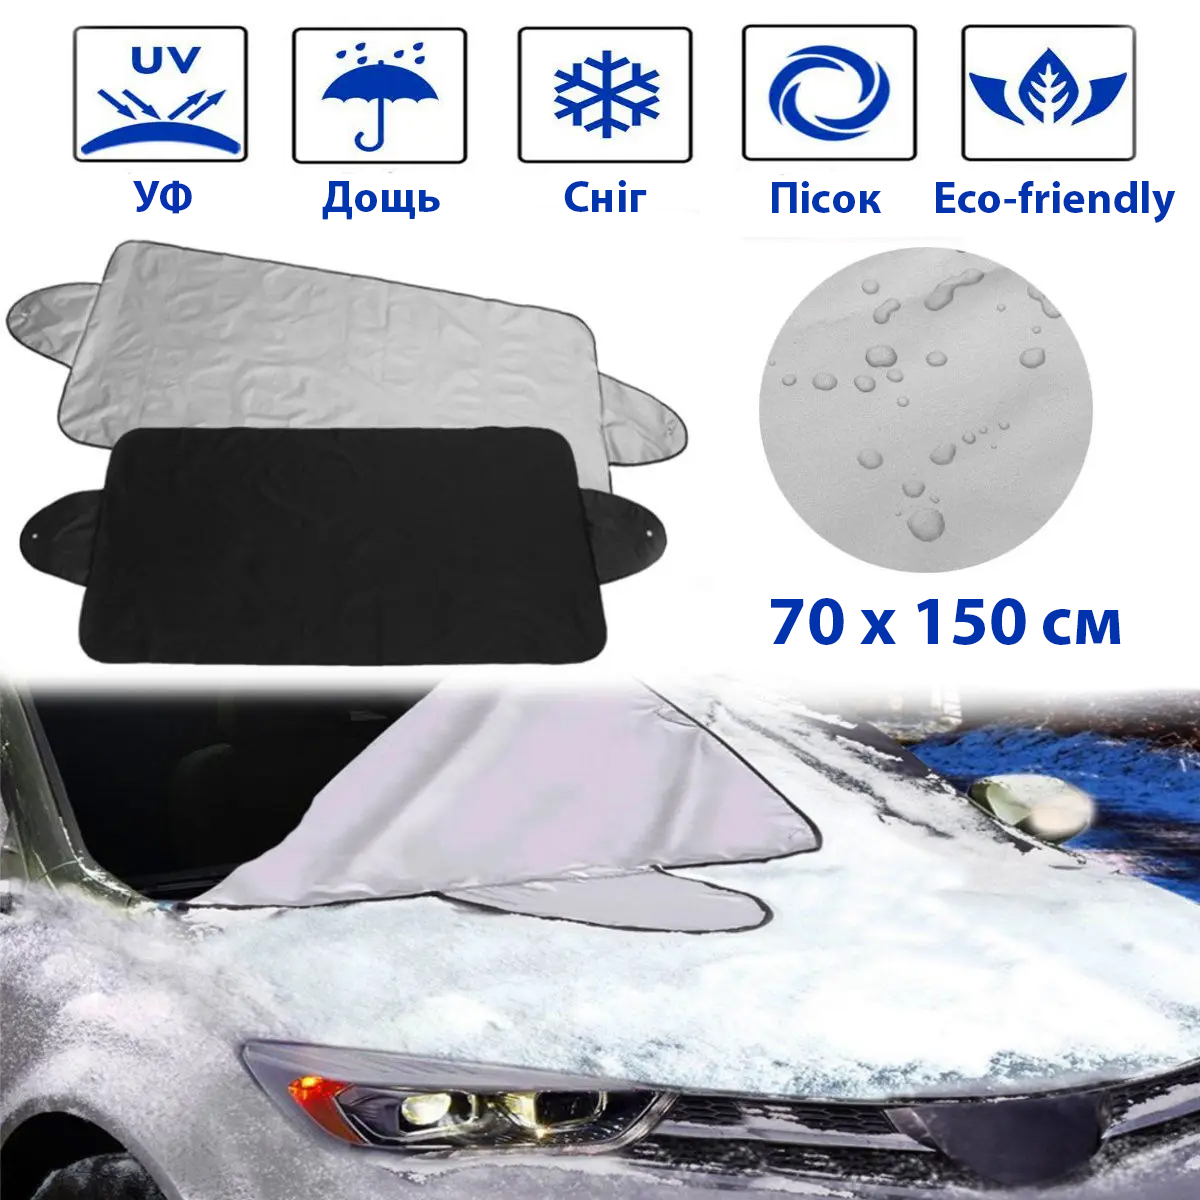 Фото 1 Автомобильный чехол накидка на лобовое стекло 70х150см Защита от УФ-лучей, дождя, снега UFT Windshield 1 Aluminium